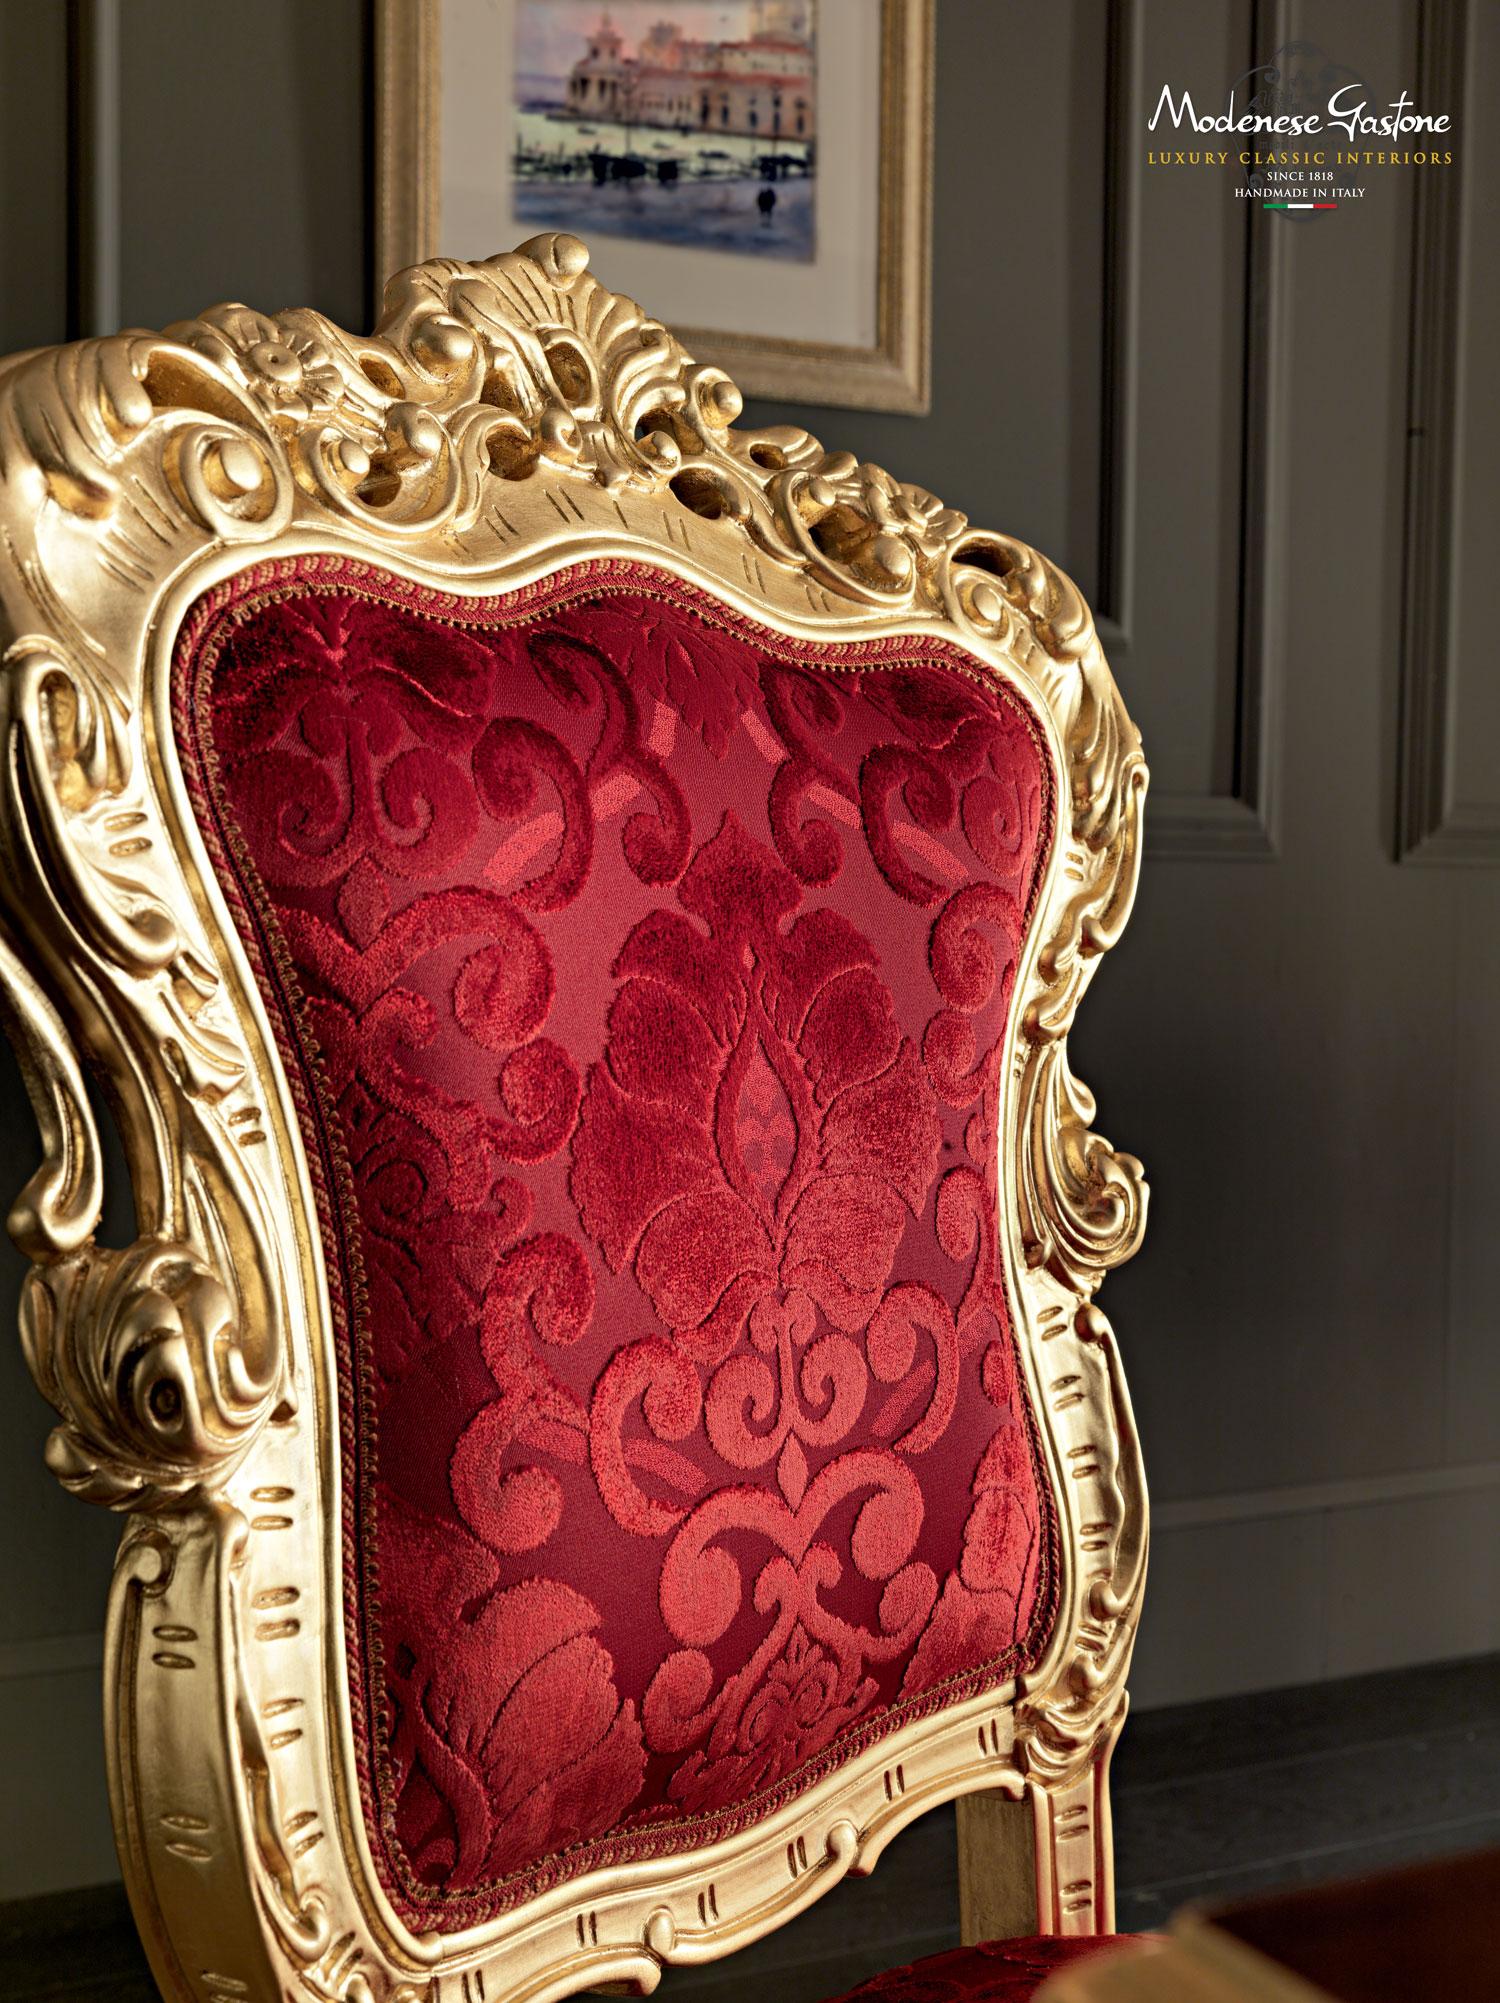 Speziell entworfener Esszimmerstuhl von Modenese Luxury Interiors im Stil des Barock. Dieser wunderbare Sessel ist ein echter Hingucker in jedem Wohnbereich, mit seiner extravaganten roten Damastpolsterung, die durch das geschwungene Holzgestell aus